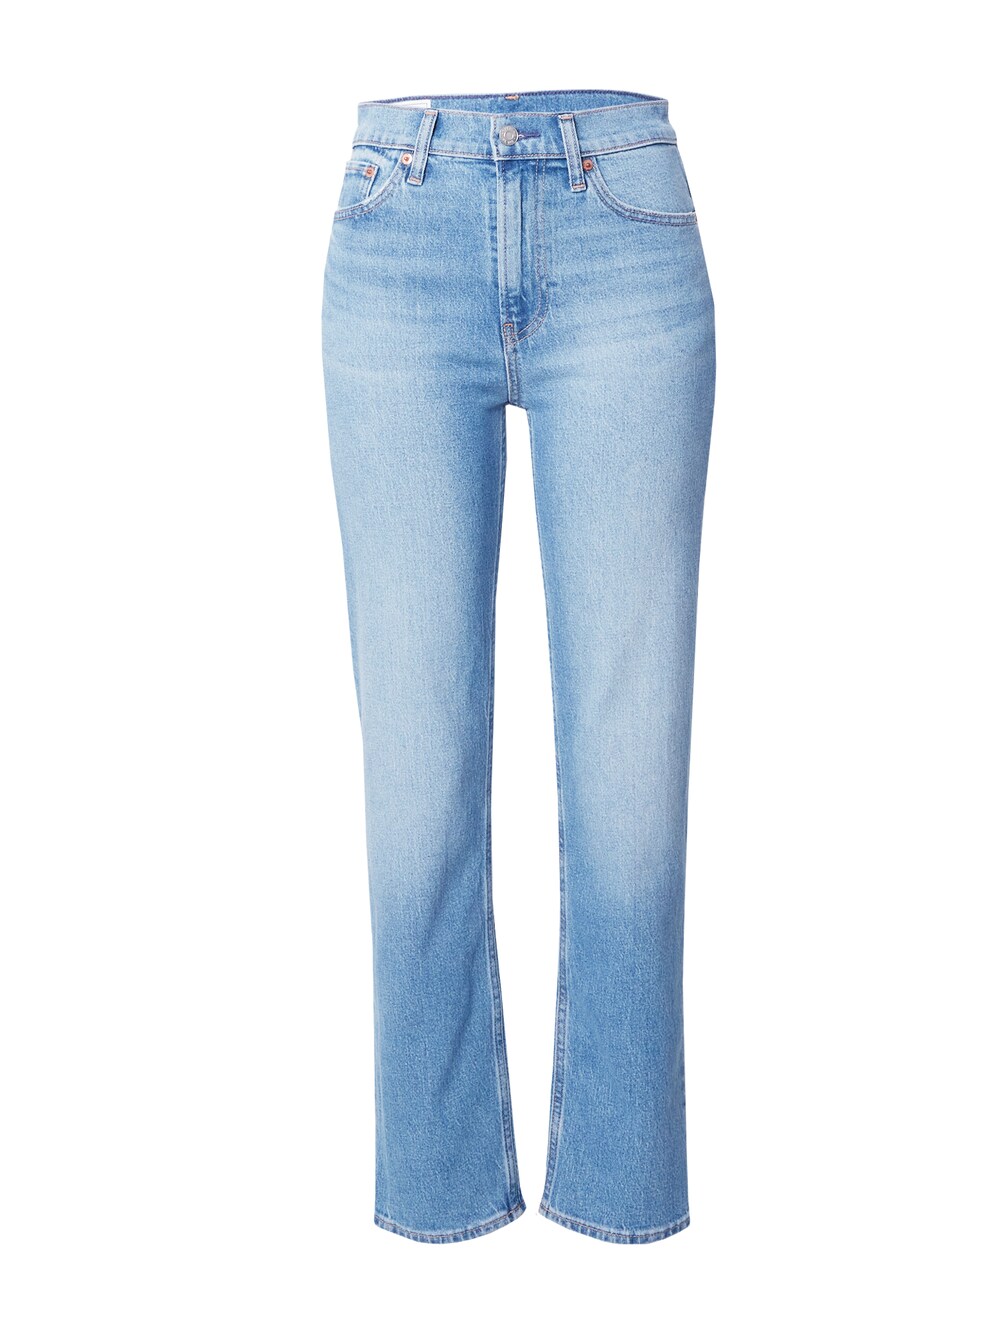 Обычные джинсы Gap 90S STRAIGHT ATLANTIC, синий